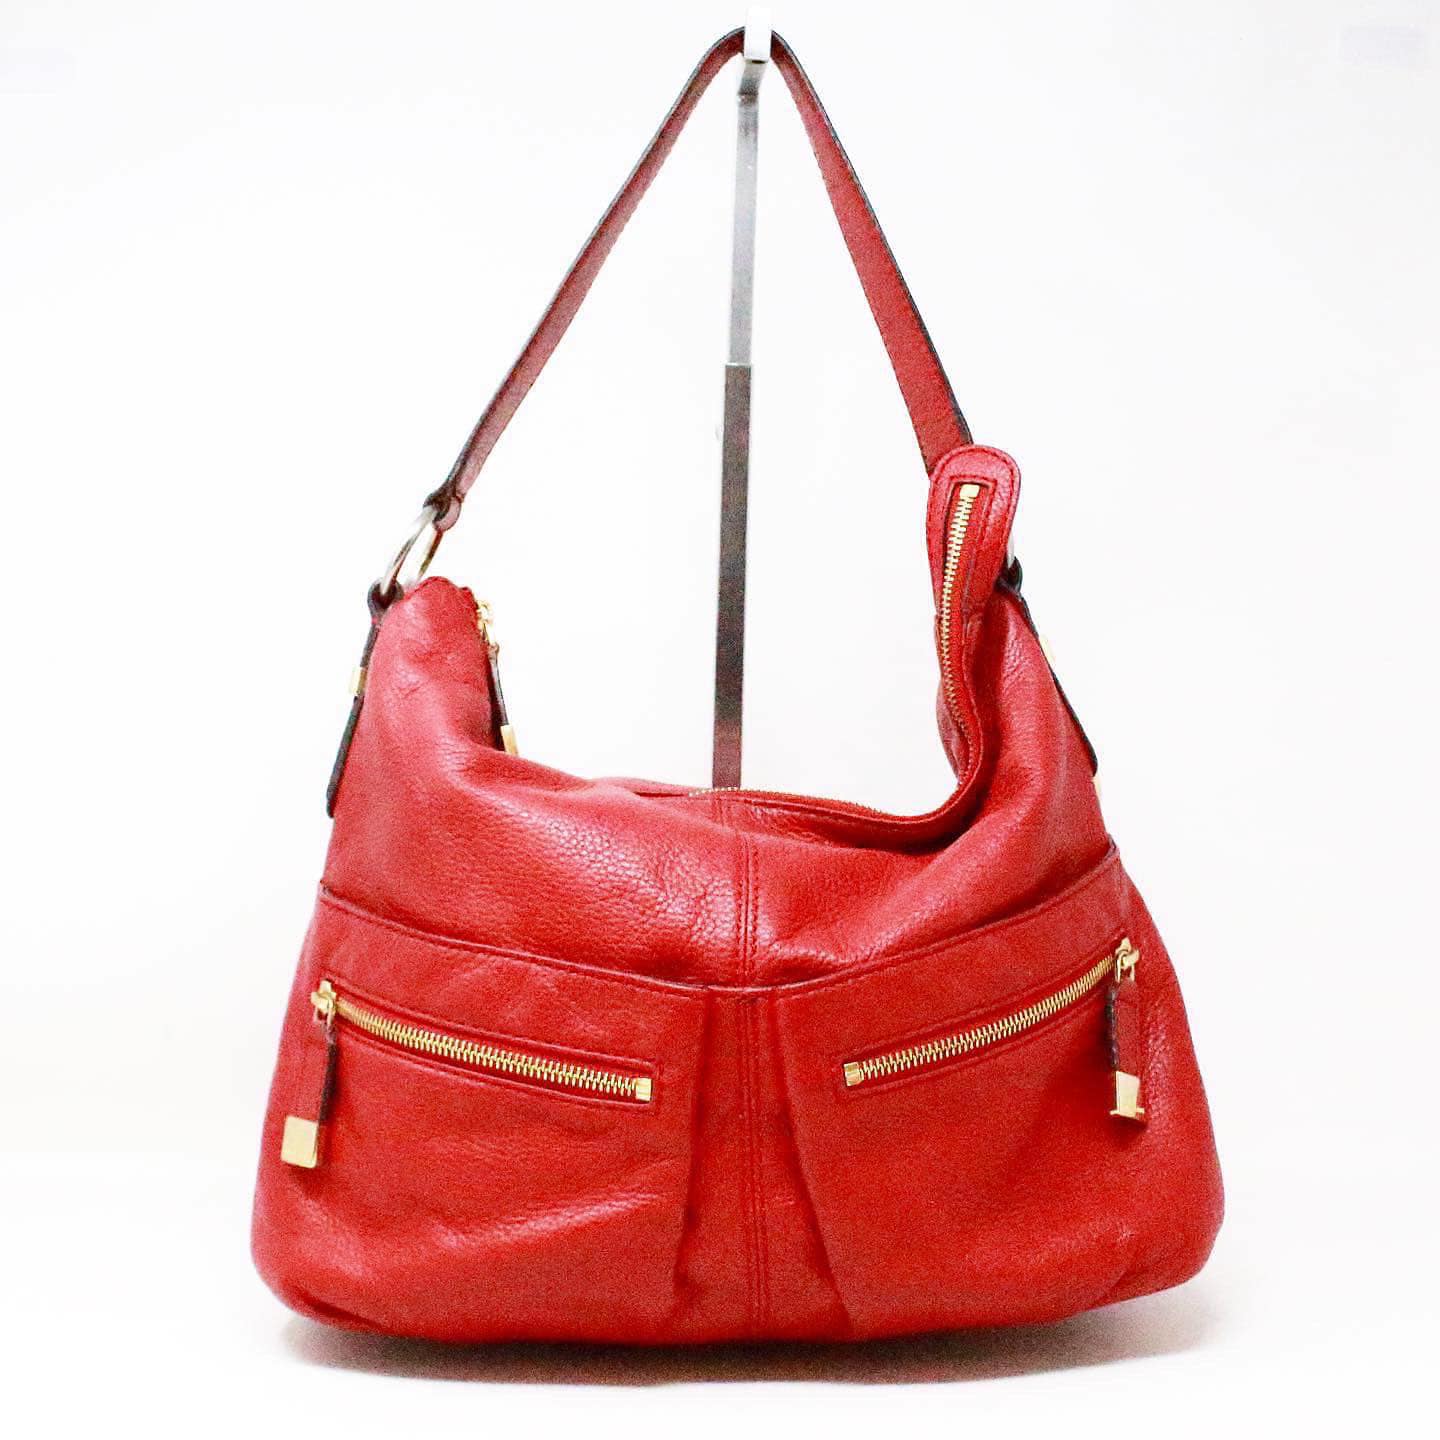 Michael Kors Red Shoulder Bag item #40323 – ALL YOUR BLISS